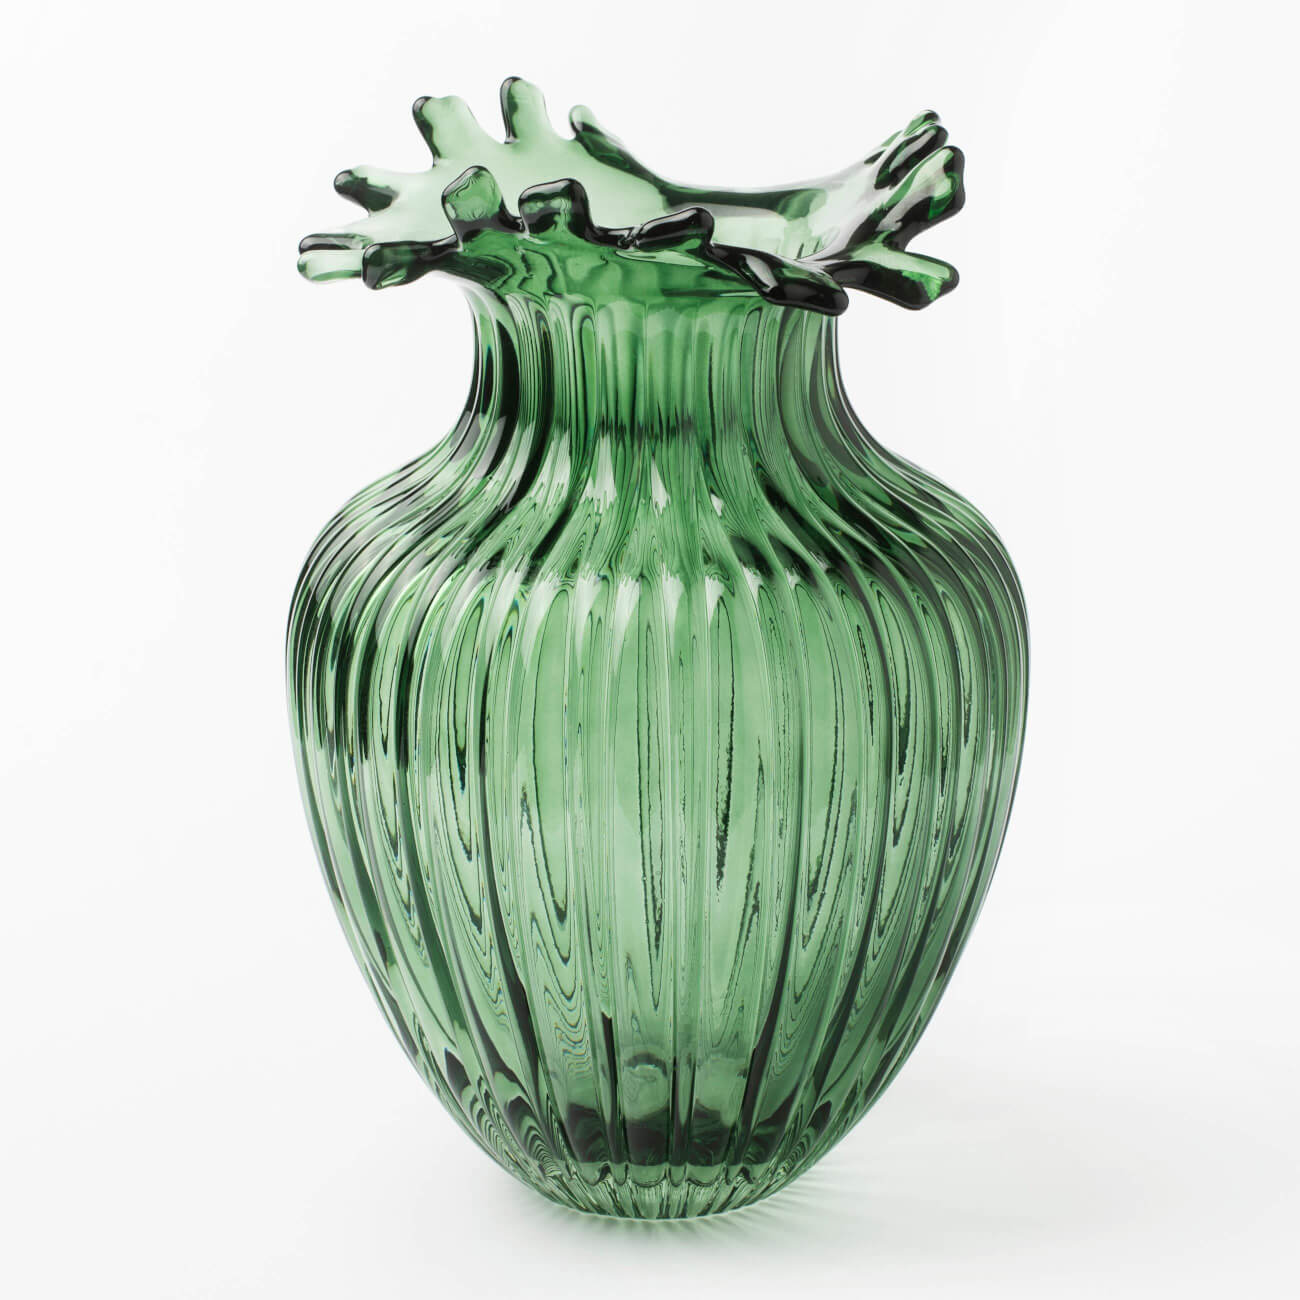 Ваза для цветов, 27 см, стекло, зеленая, Ribedic ваза для цветов 26 см стекло светло зеленая fantasy